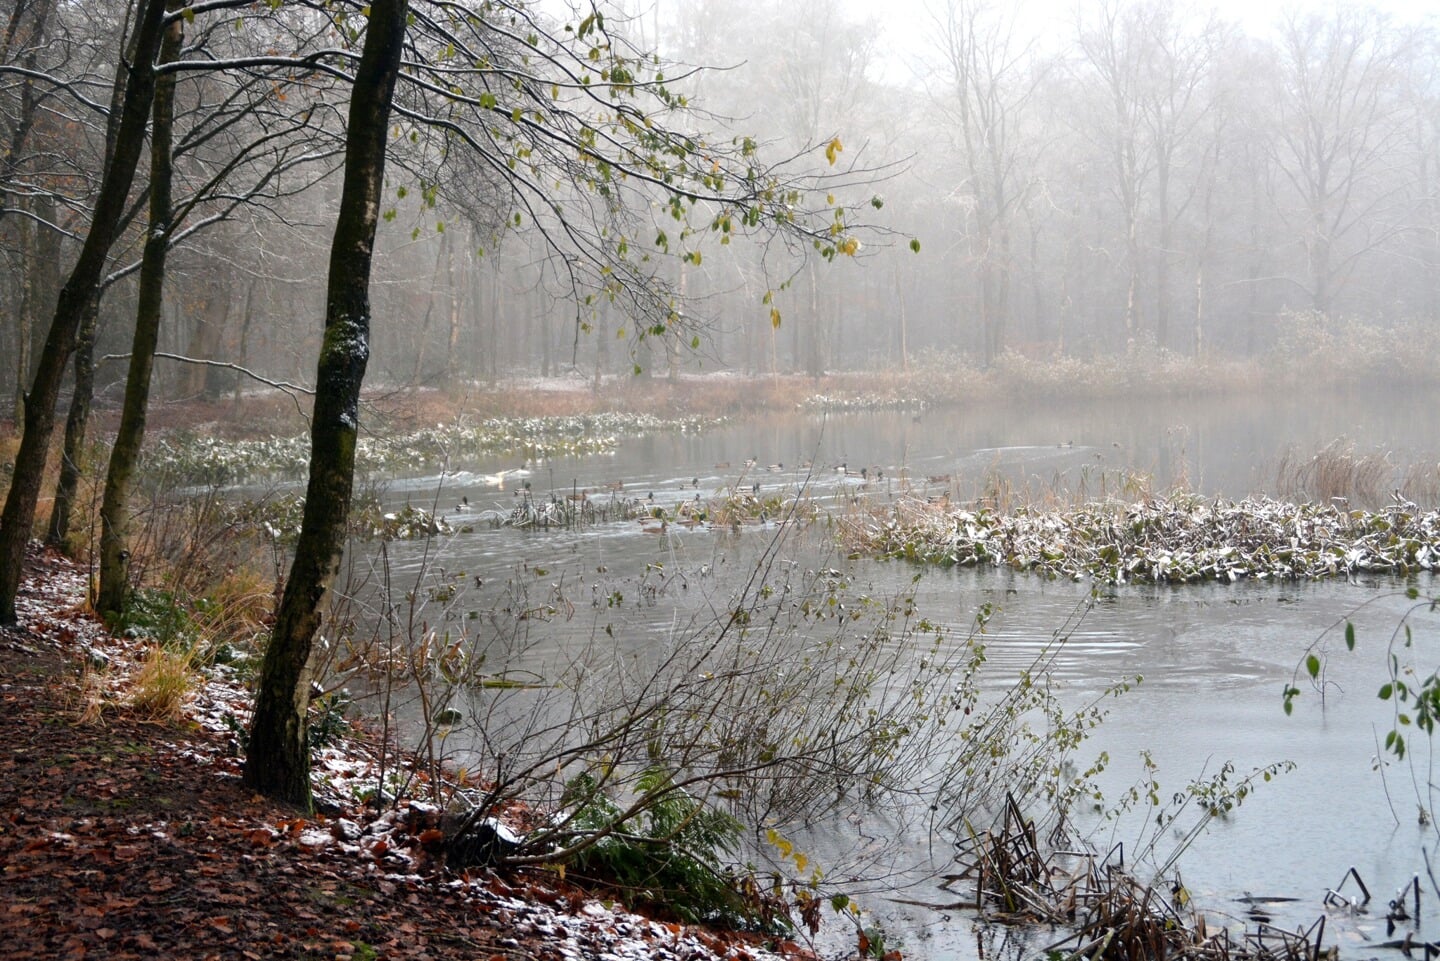 Winterse aanblik rond de bosvijver in de Vegenlinbossen.